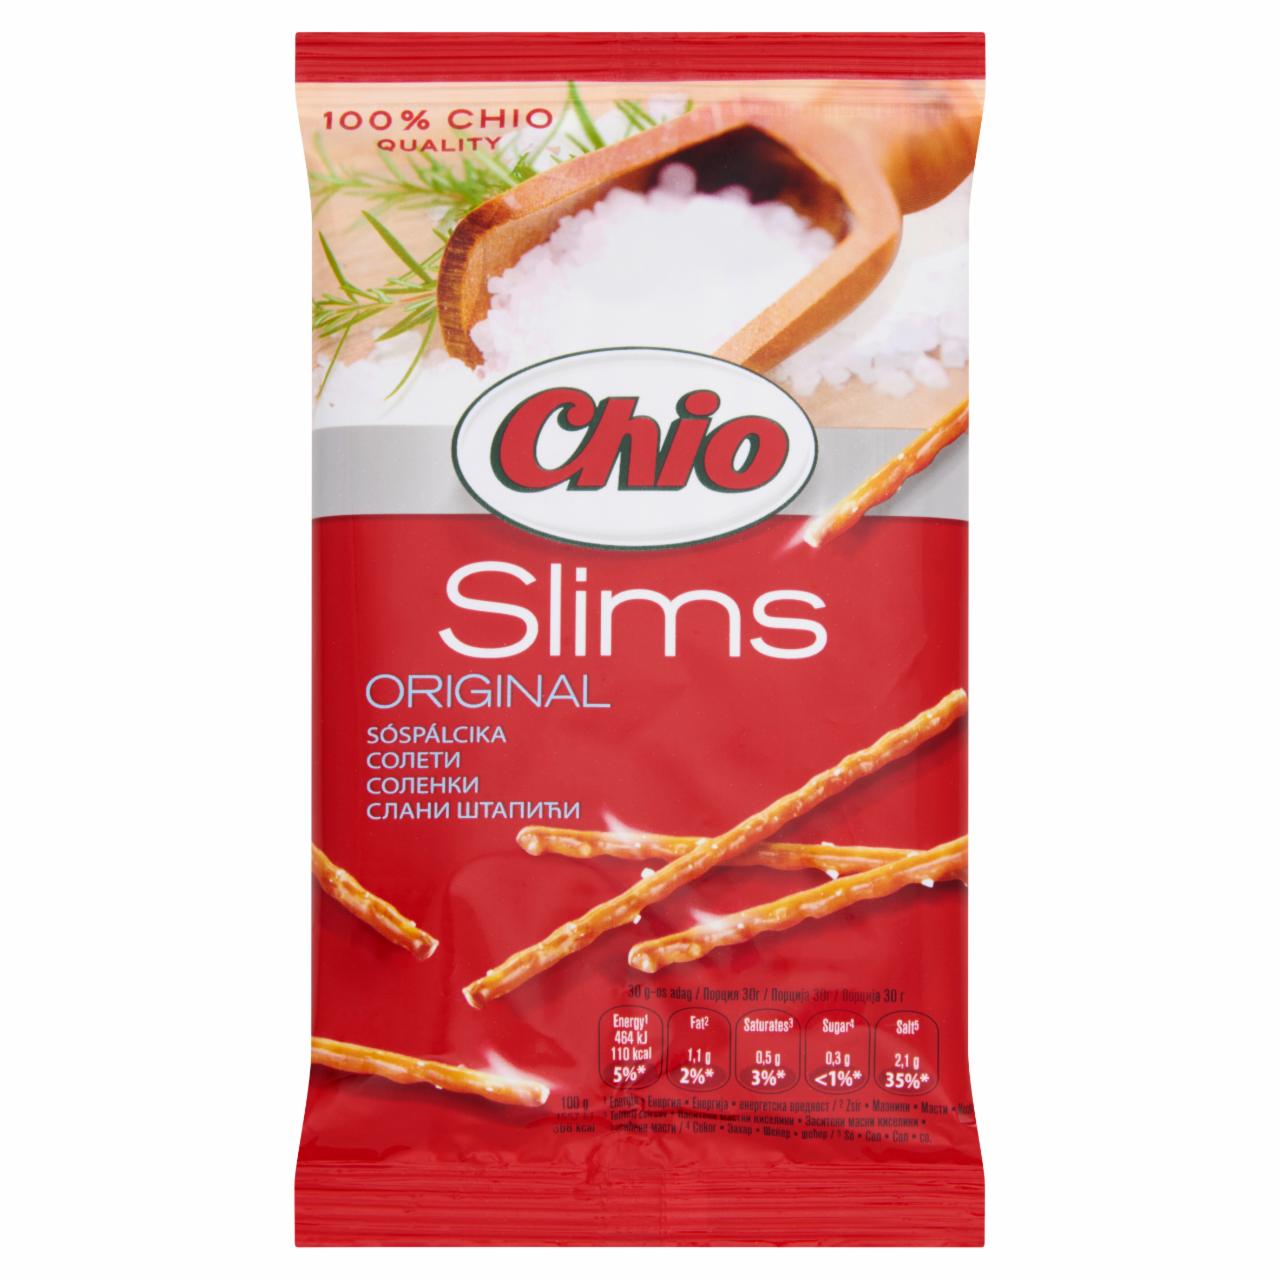 Képek - Chio Slims Original sóspálcika 40 g